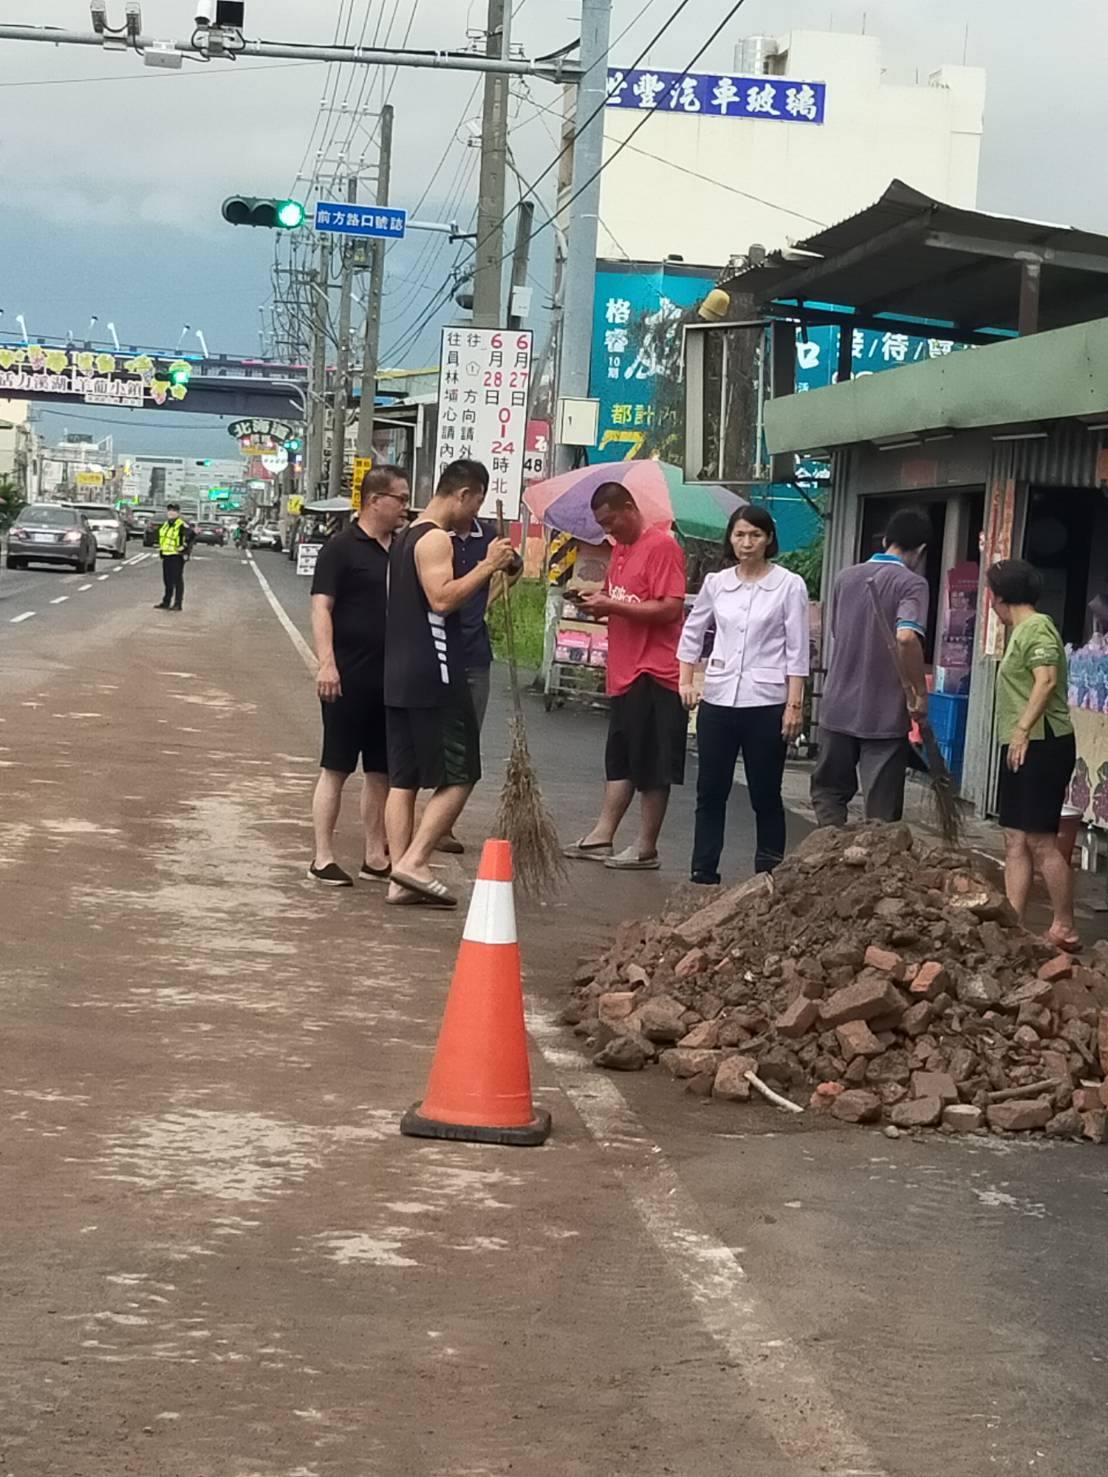 6月份鎮政活動剪影1090606員鹿路碎磚擋道，造成交通受阻，黃鎮長瑞珠派有關單位清理及協助清理.